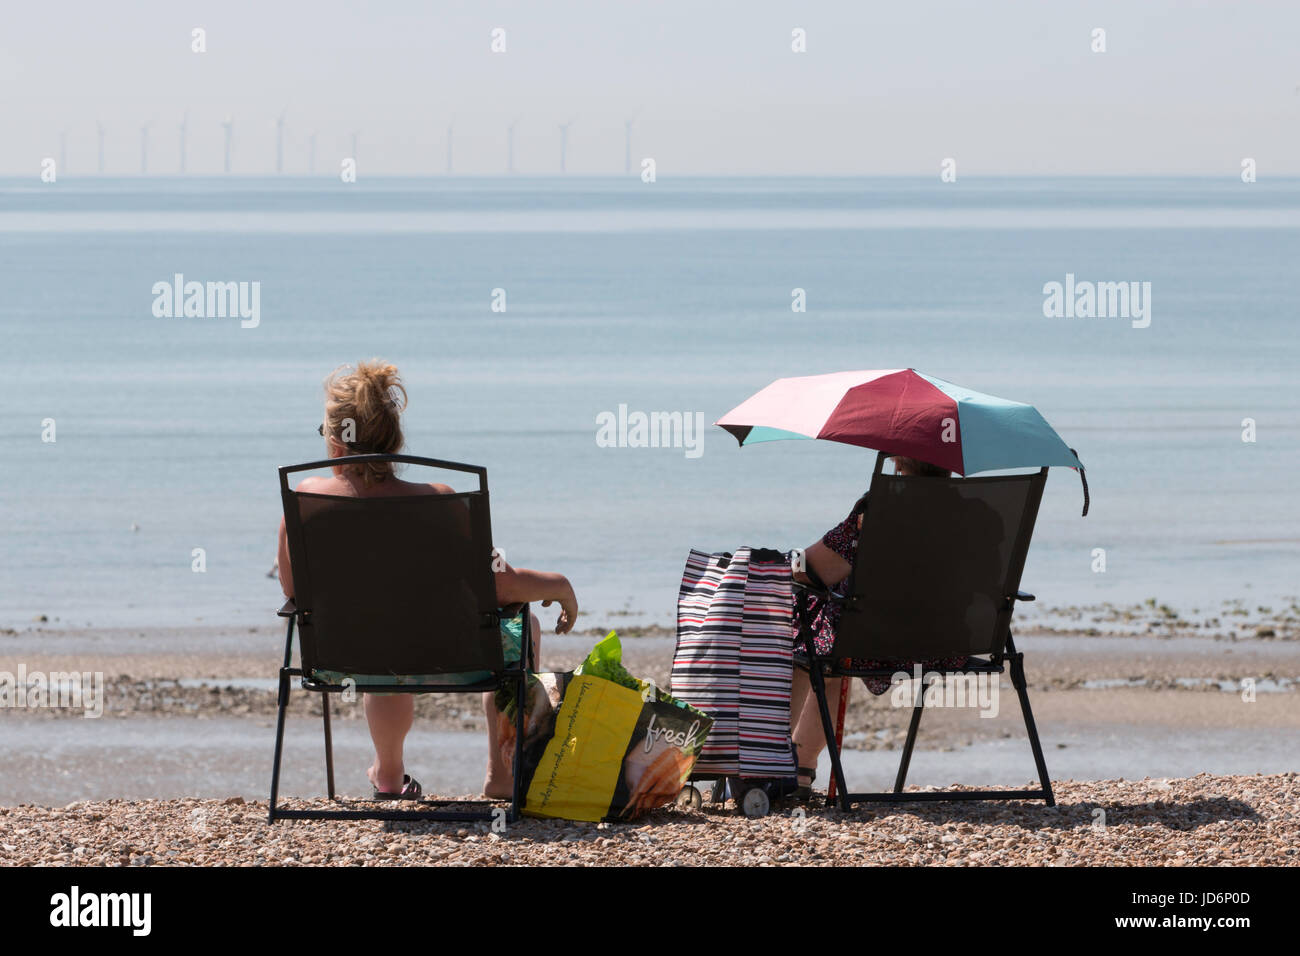 Zwei Damen, die den sommer genießen Sonne am Meer. Man unter einem Sonnenschirm sitzen. Eine Offshore Wind Farm kann am Horizont gesehen werden. Stockfoto